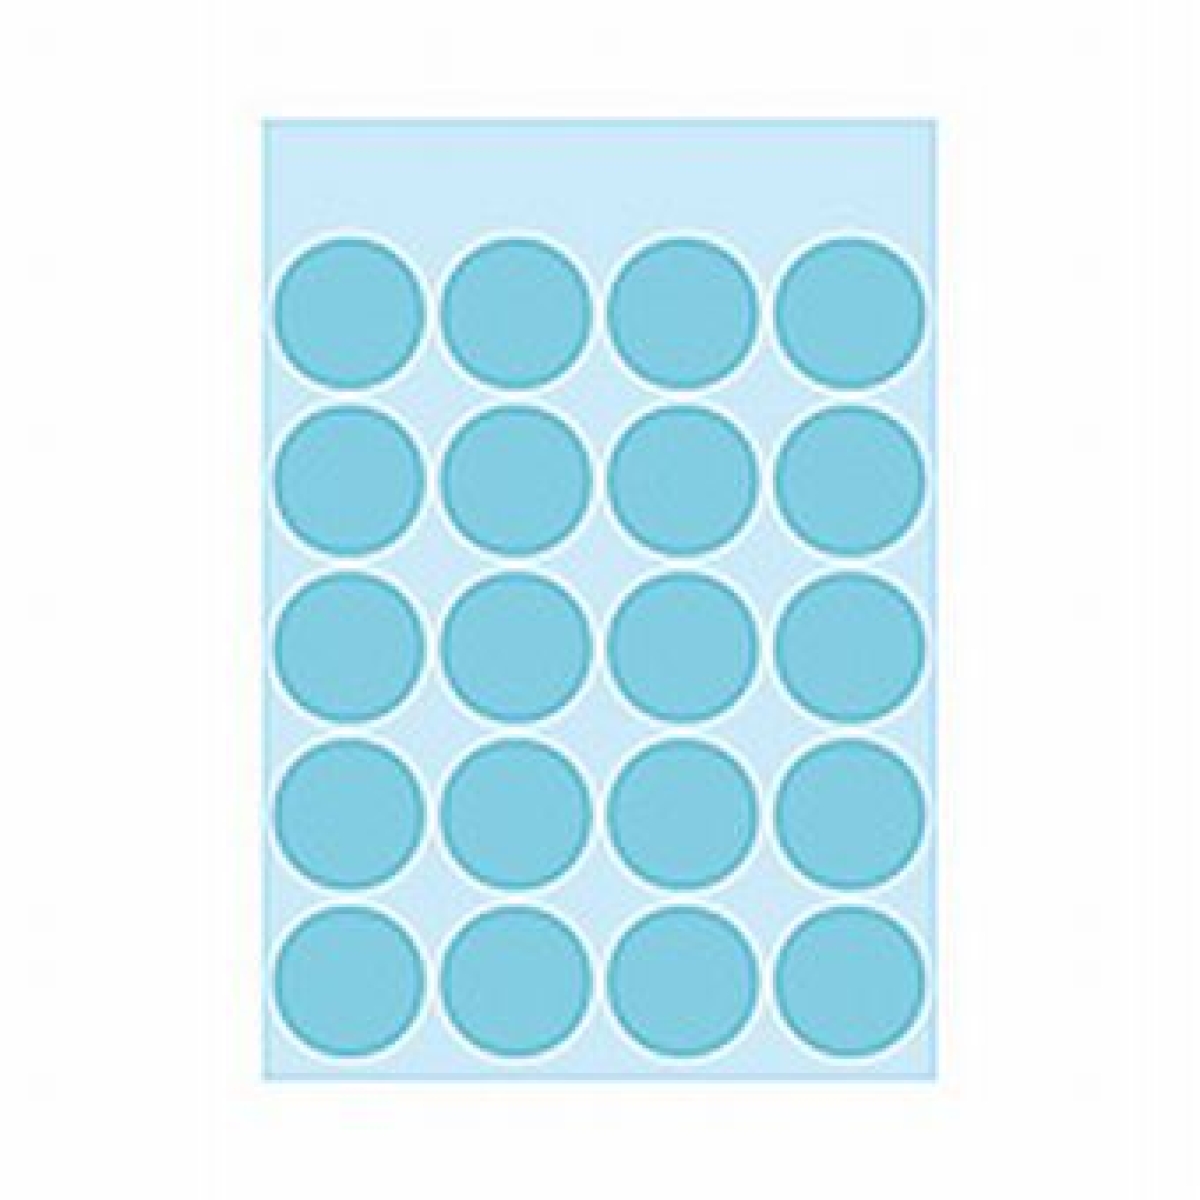 HermaEtikett Markierungspunkt 19mmD 100ST blau haftend 1873Artikel-Nr: 4008705018739